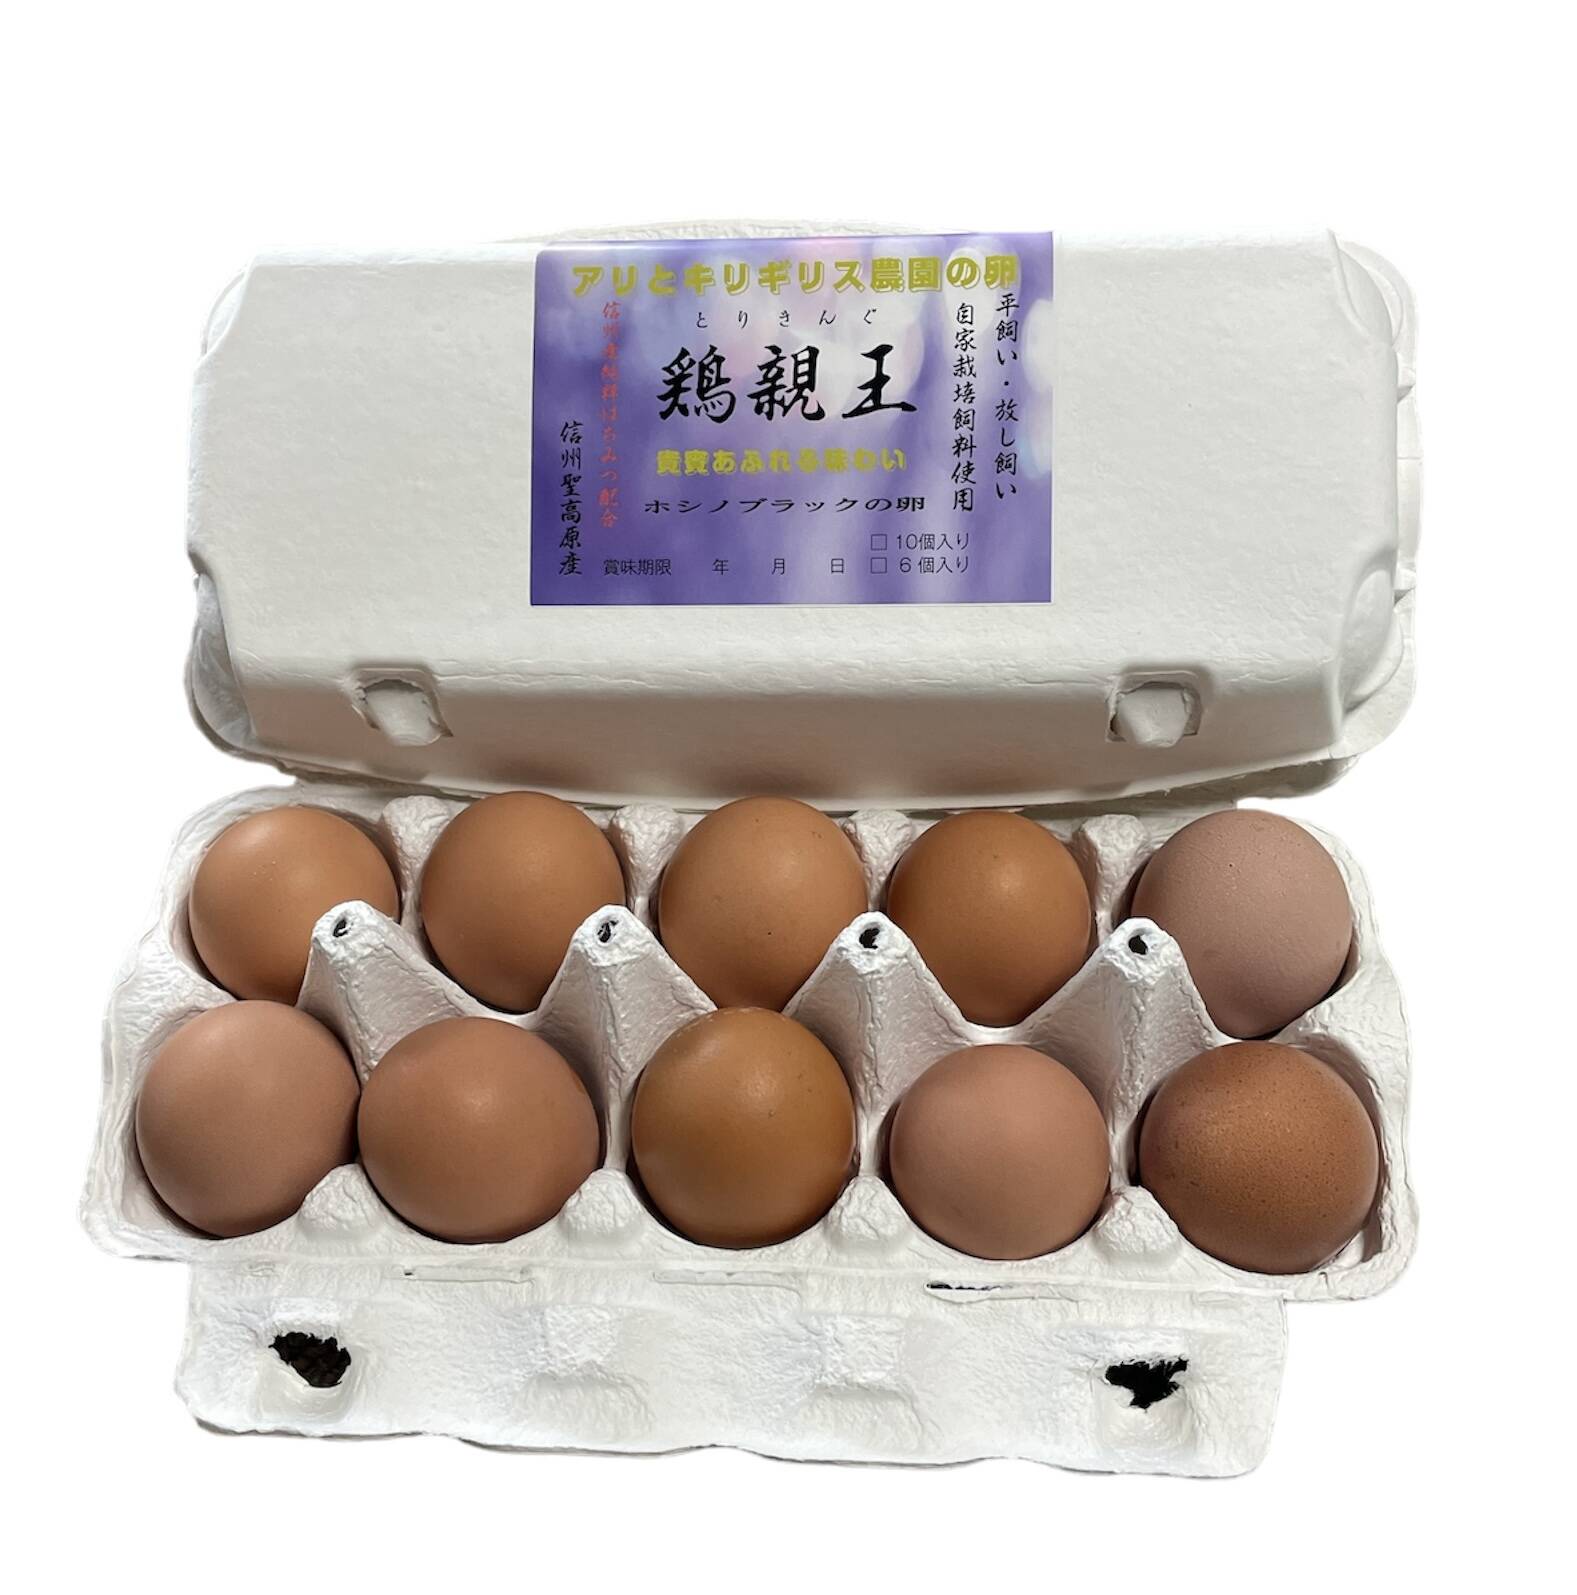 ホシノブラックの卵 【鶏親王】20個入り平飼い・放し飼い：長野県産の